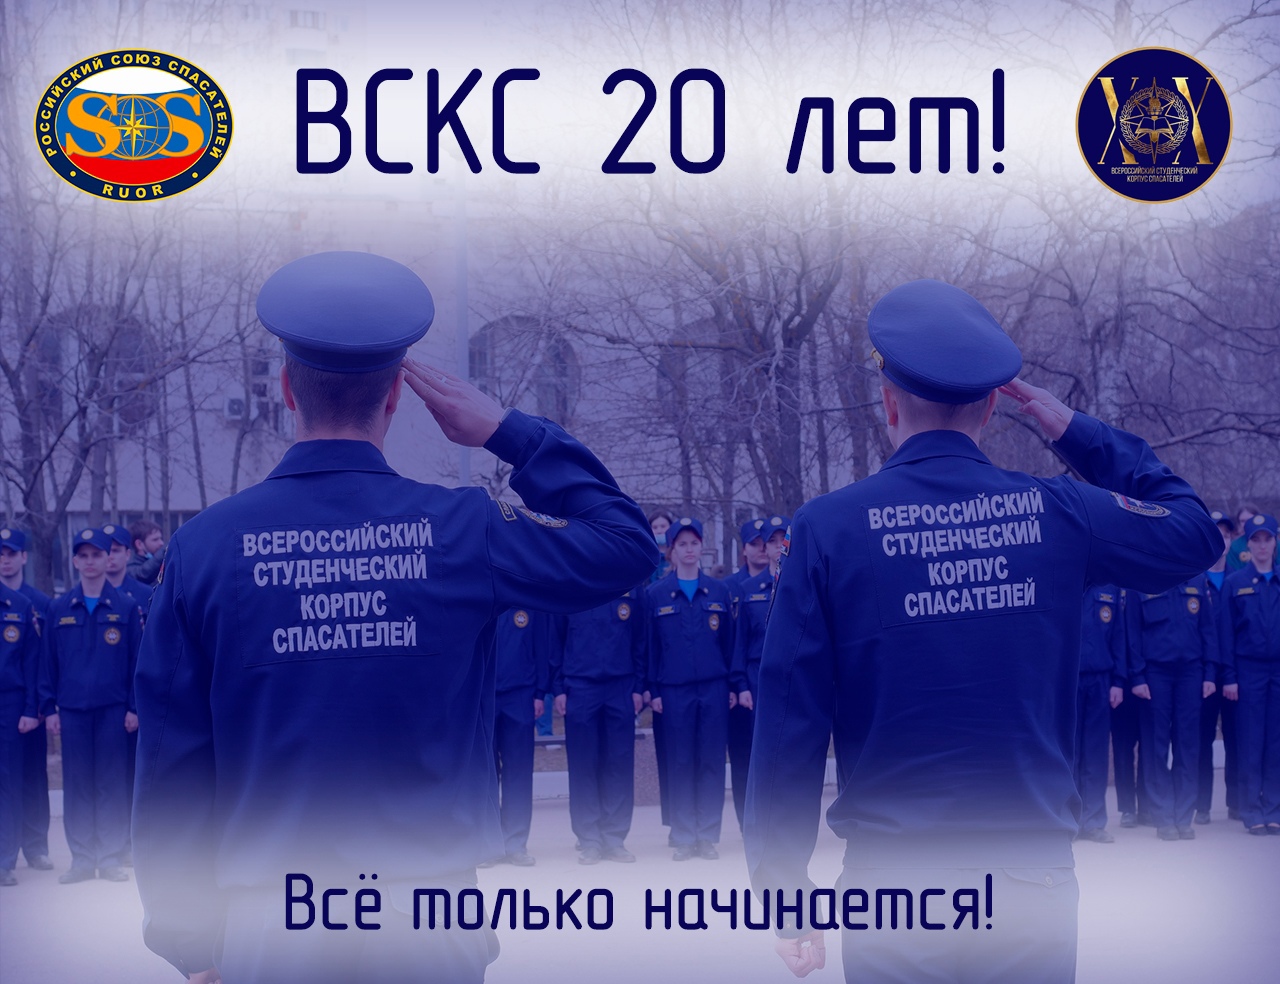 22 апреля 2021 года, знаменательная дата – 20 лет со дня образования Всероссийского студенческого корпуса спасателей!